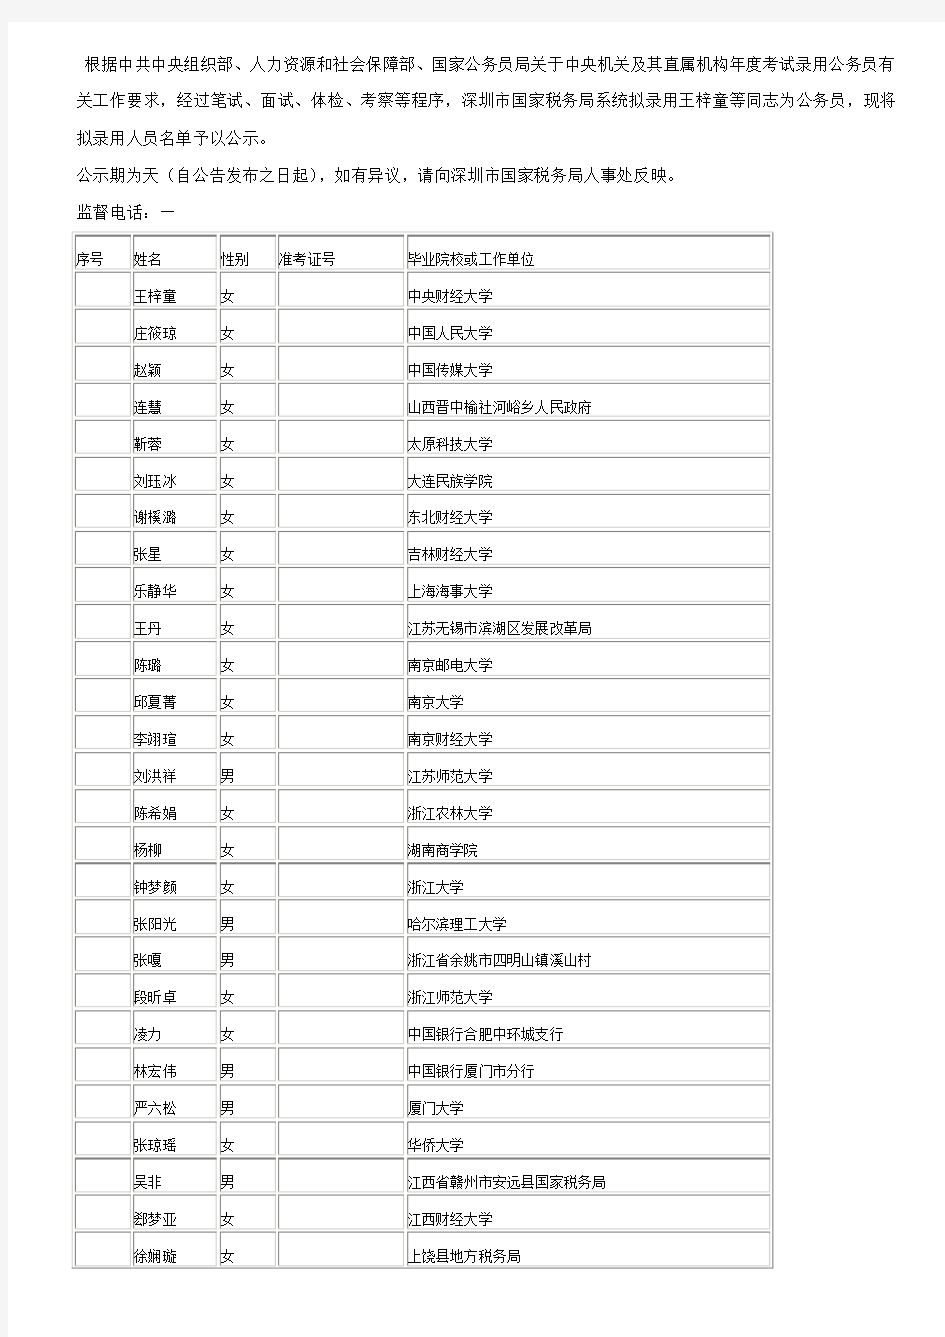 深圳市国家税务局系统2014年拟录用公务员公示